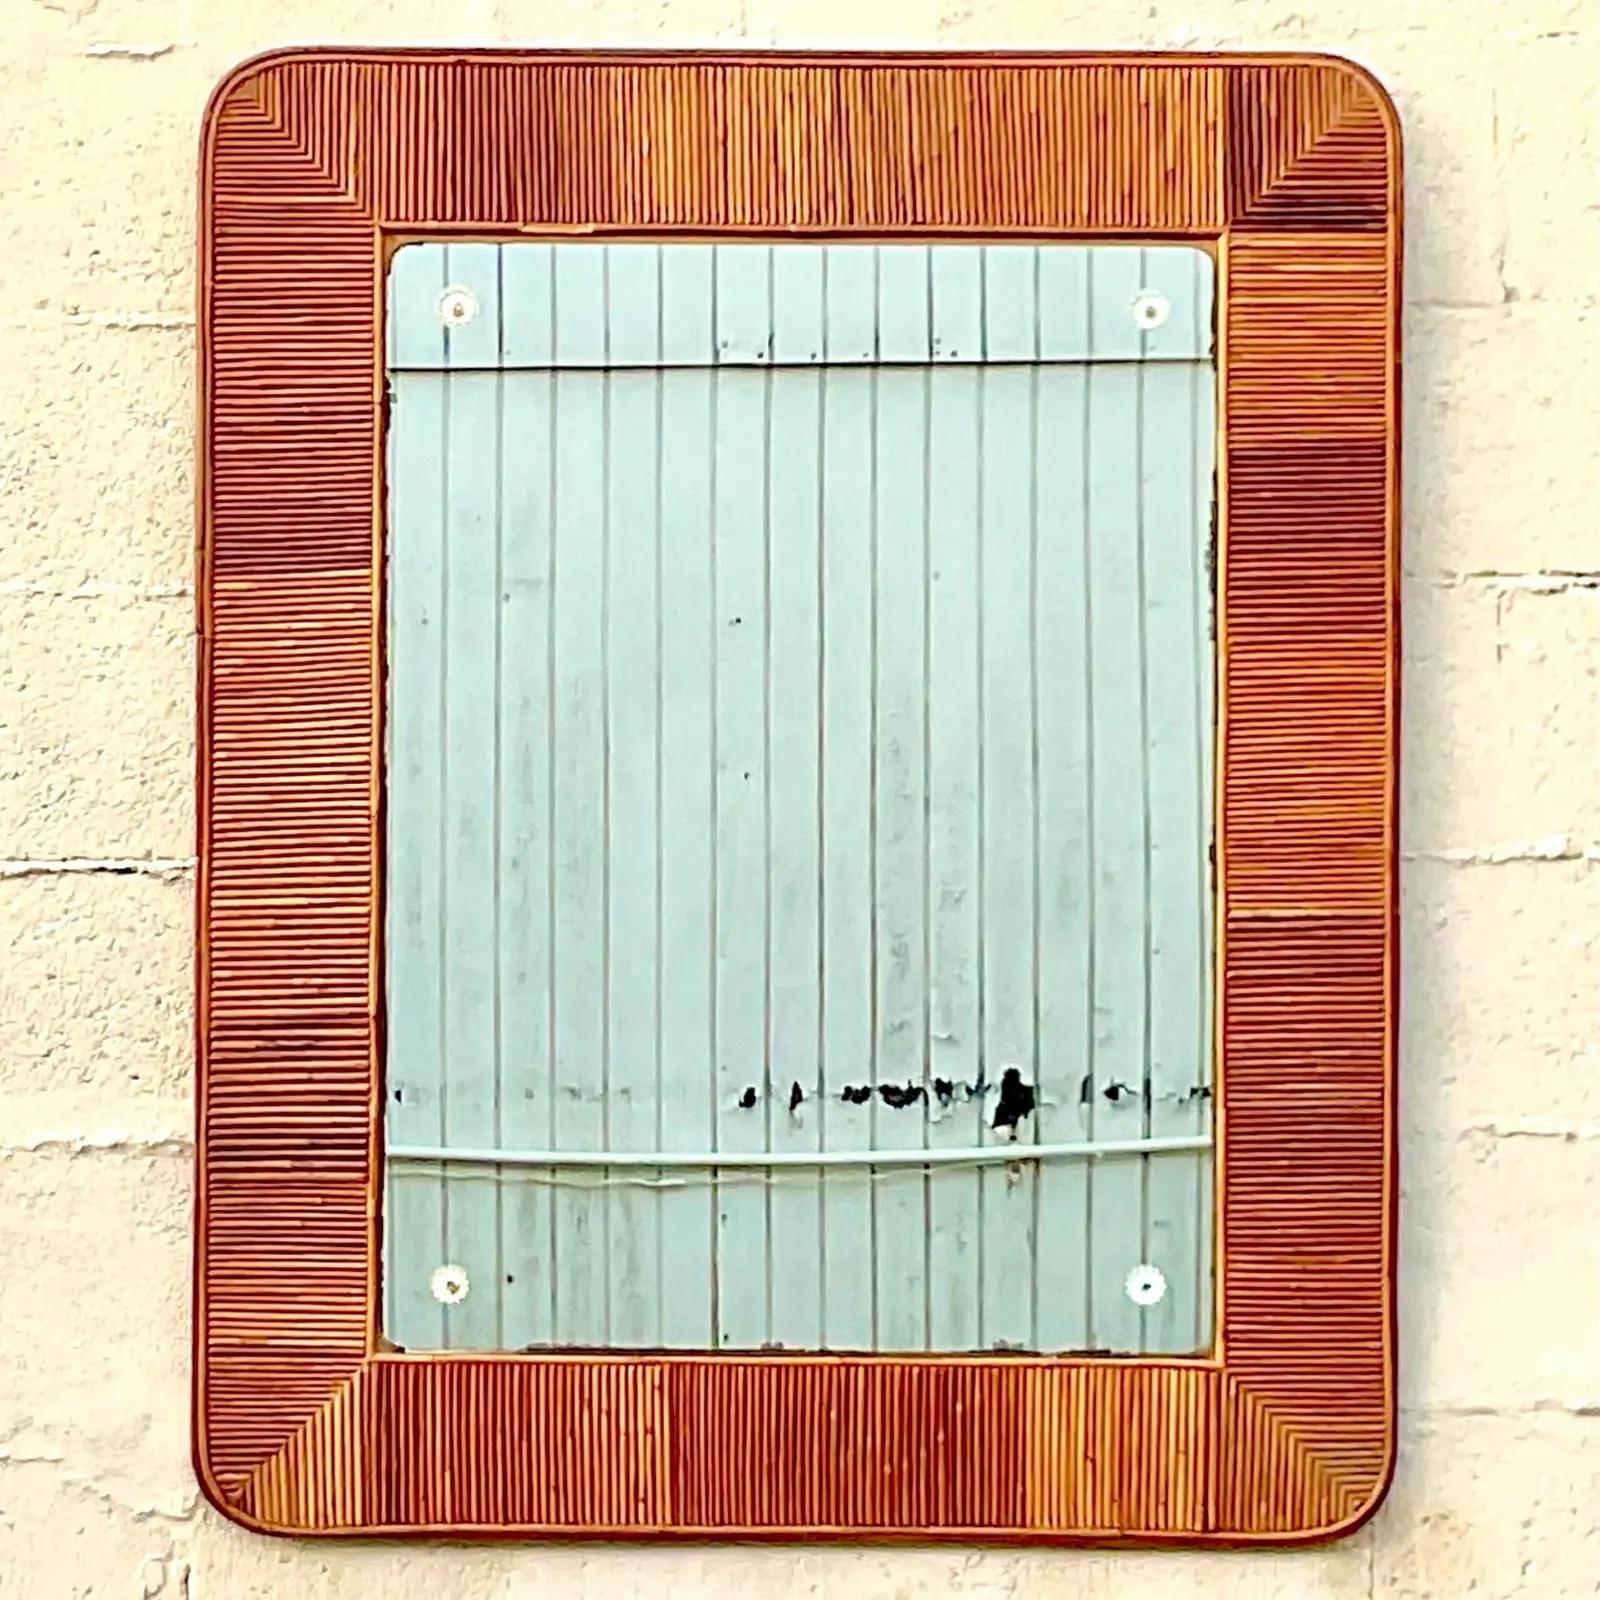 Ein fantastischer Vintage-Wandspiegel im Küstenstil. Ein schicker Rahmen aus Bleistiftschilf in schönen warmen Brauntönen. Ein Vintage-Spiegel mit Versilberung an den Rändern aus der Zeit. Es ist die perfekte Menge an Patina. Erworben aus einem